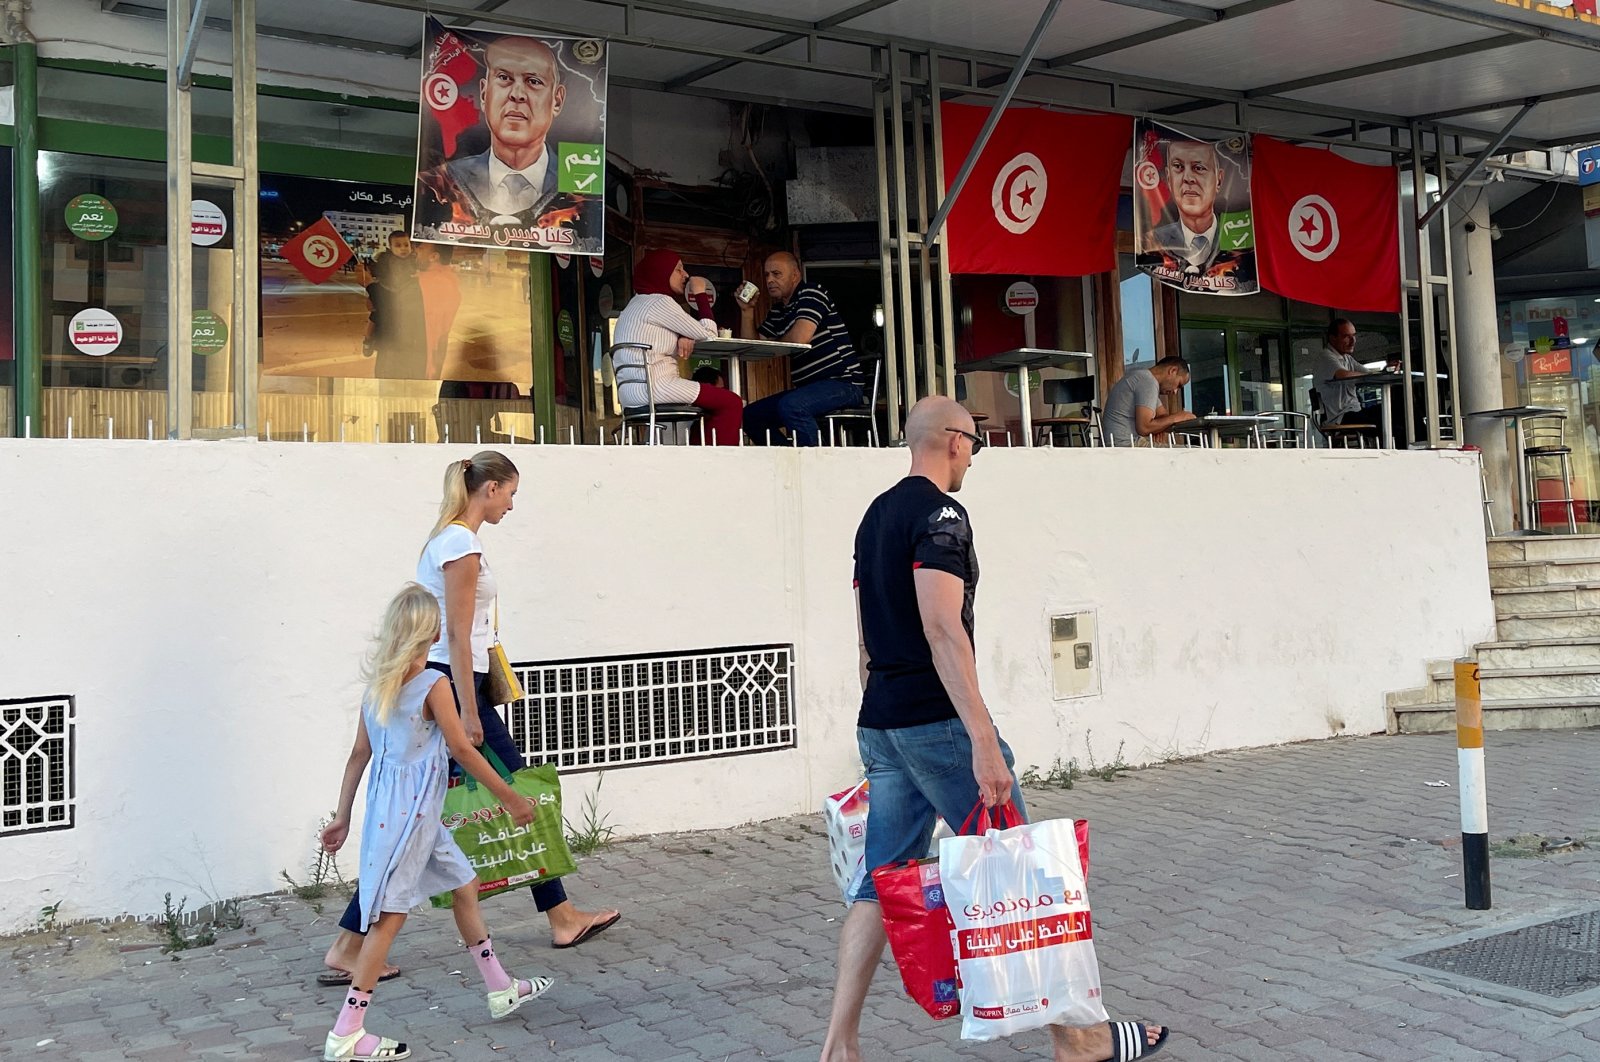 Harga melonjak dan banyak lagi: Ekonomi Tunisia dalam masalah